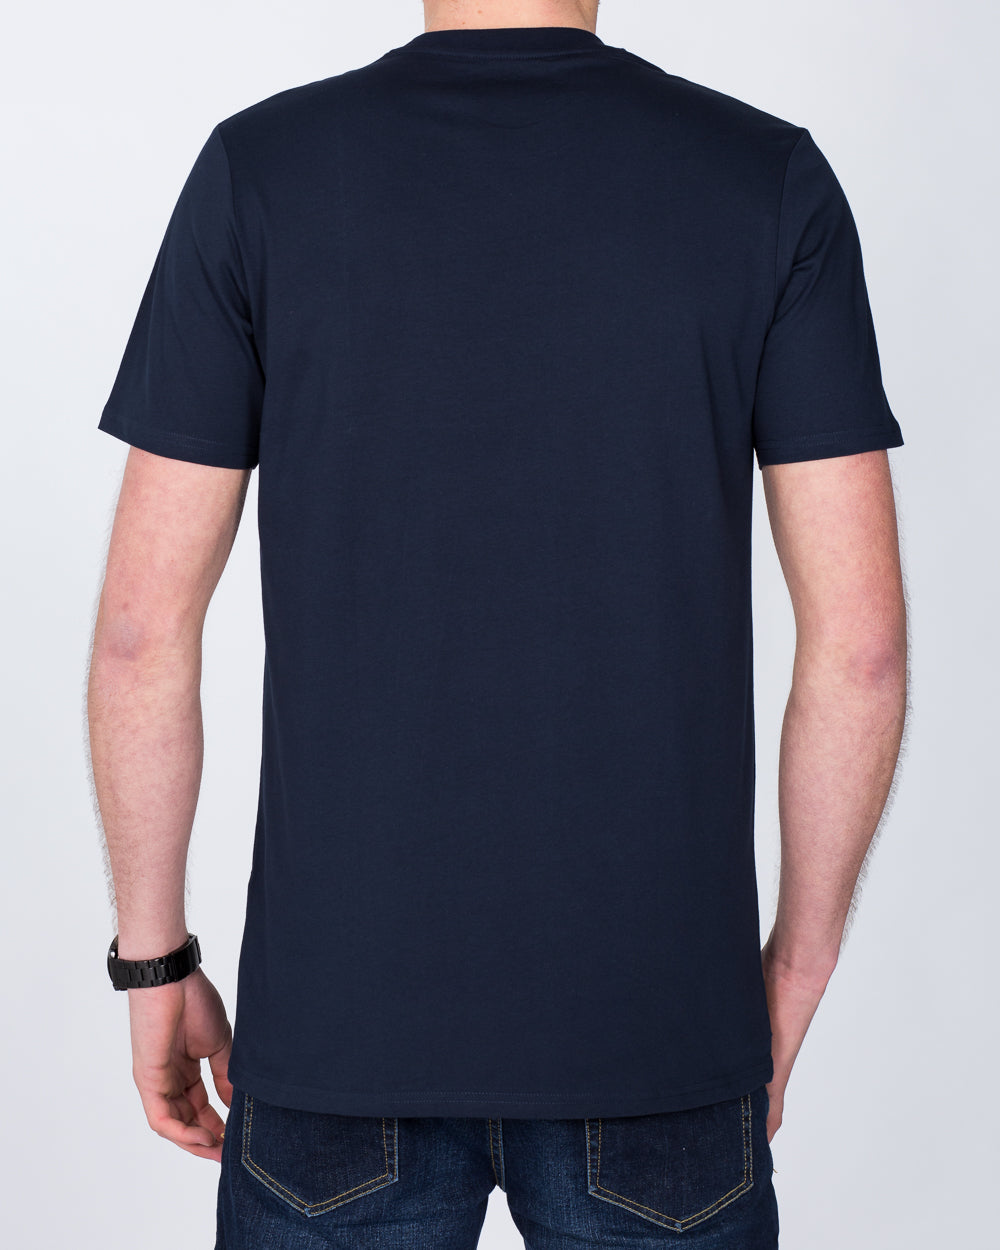 Girav Sydney Tall T-Shirt (navy)